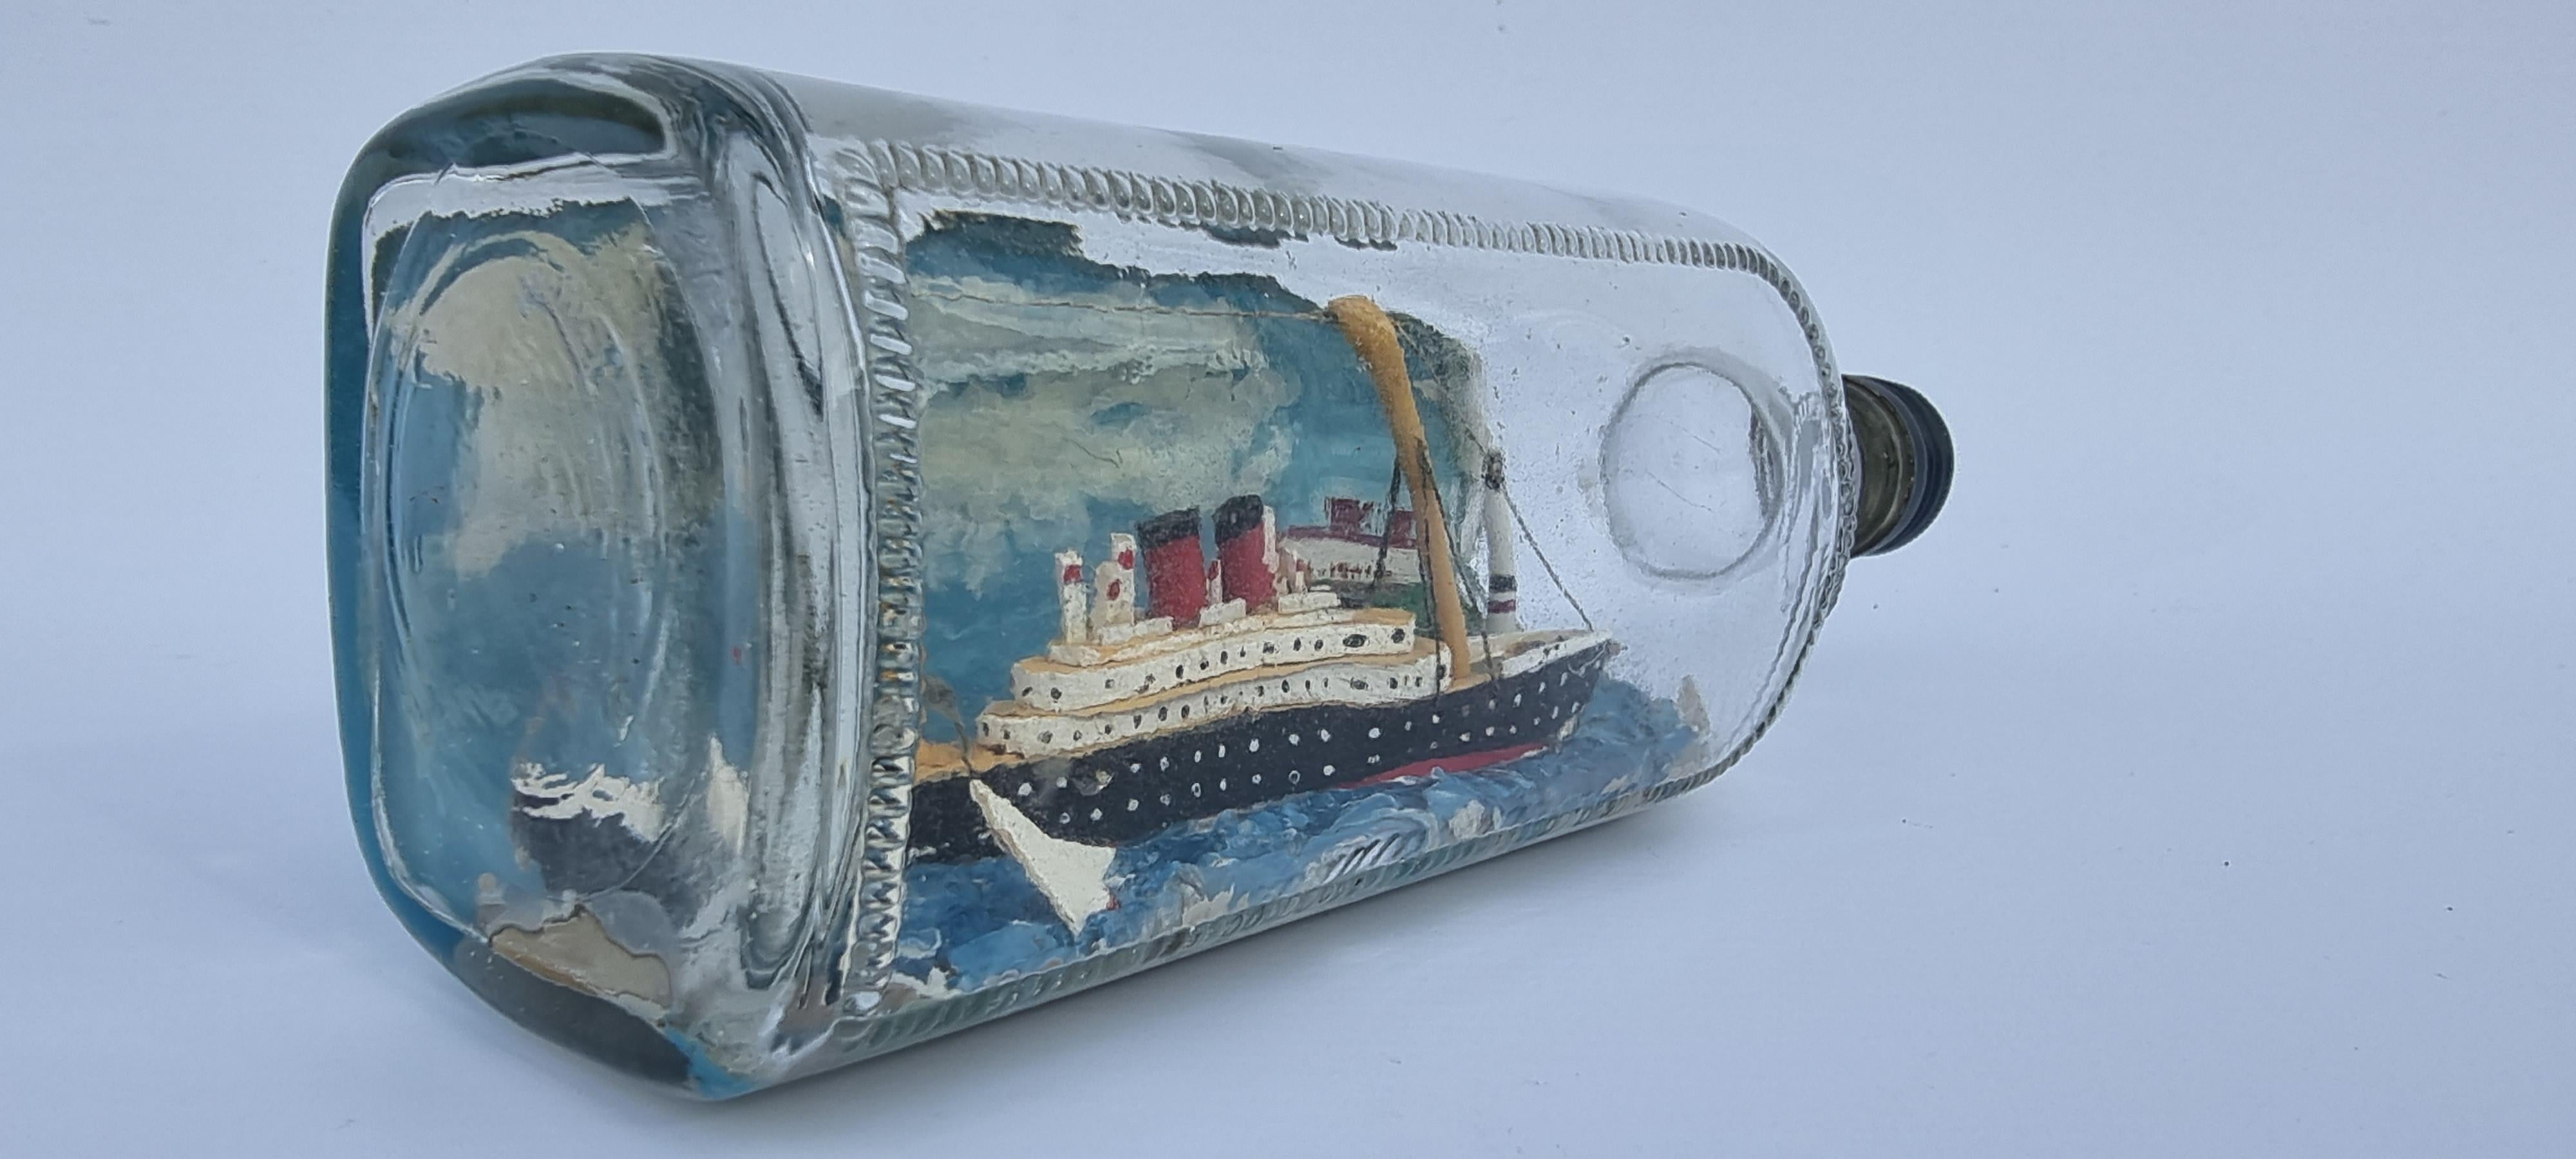 Dieses Flaschenschiff-Diorama aus dem frühen 20. Jahrhundert zeigt ein seltenes Motiv, nämlich ein frühes, großes, dampfbetriebenes Passagierschiff, das in eine Szene vor der Küste mit einem Leuchtturm und Häusern eingebettet ist. Das Schiff